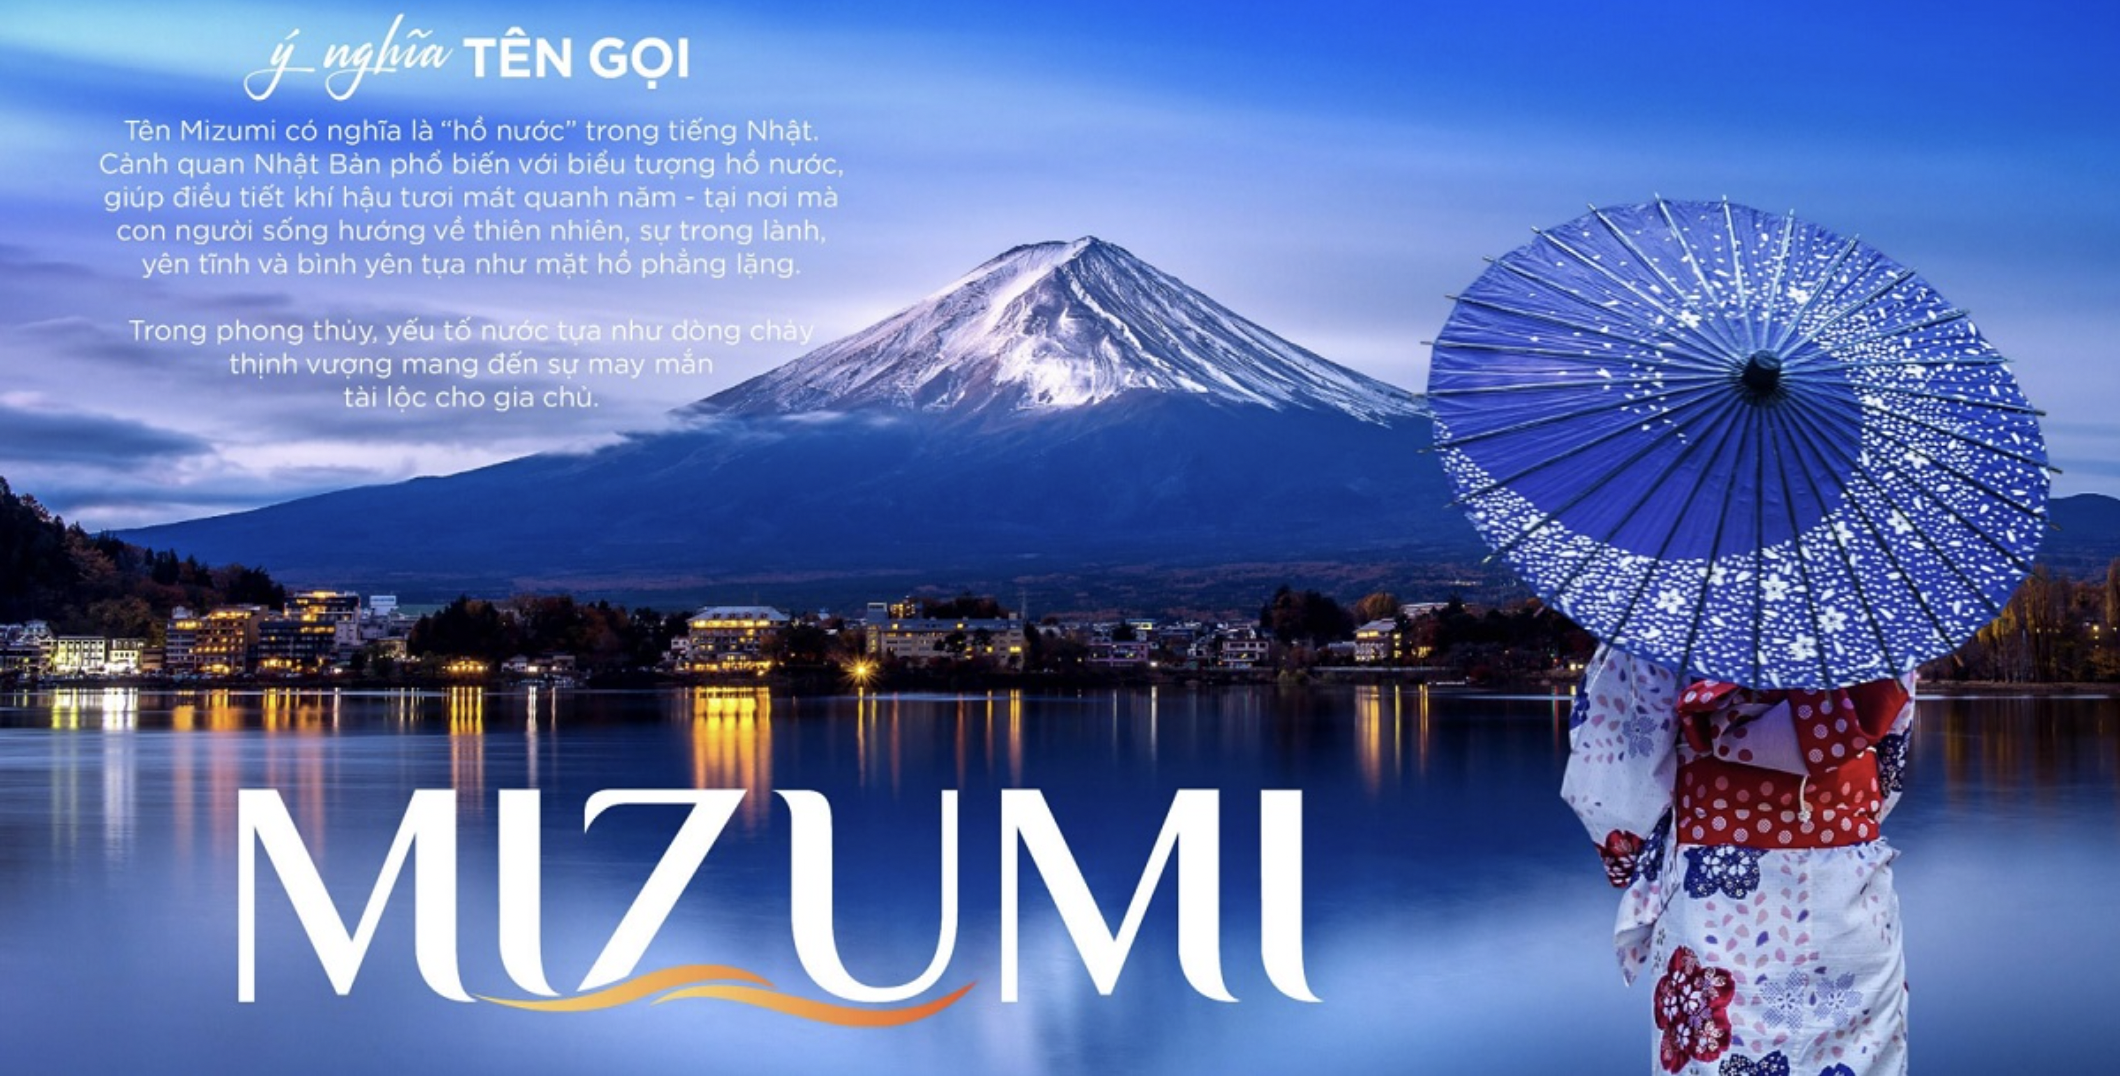 MIZUMI - Nhật bản thu nhỏ tại siêu thành phố biển, sức khoẻ và du lịch Novaworld Phan Thiết 1